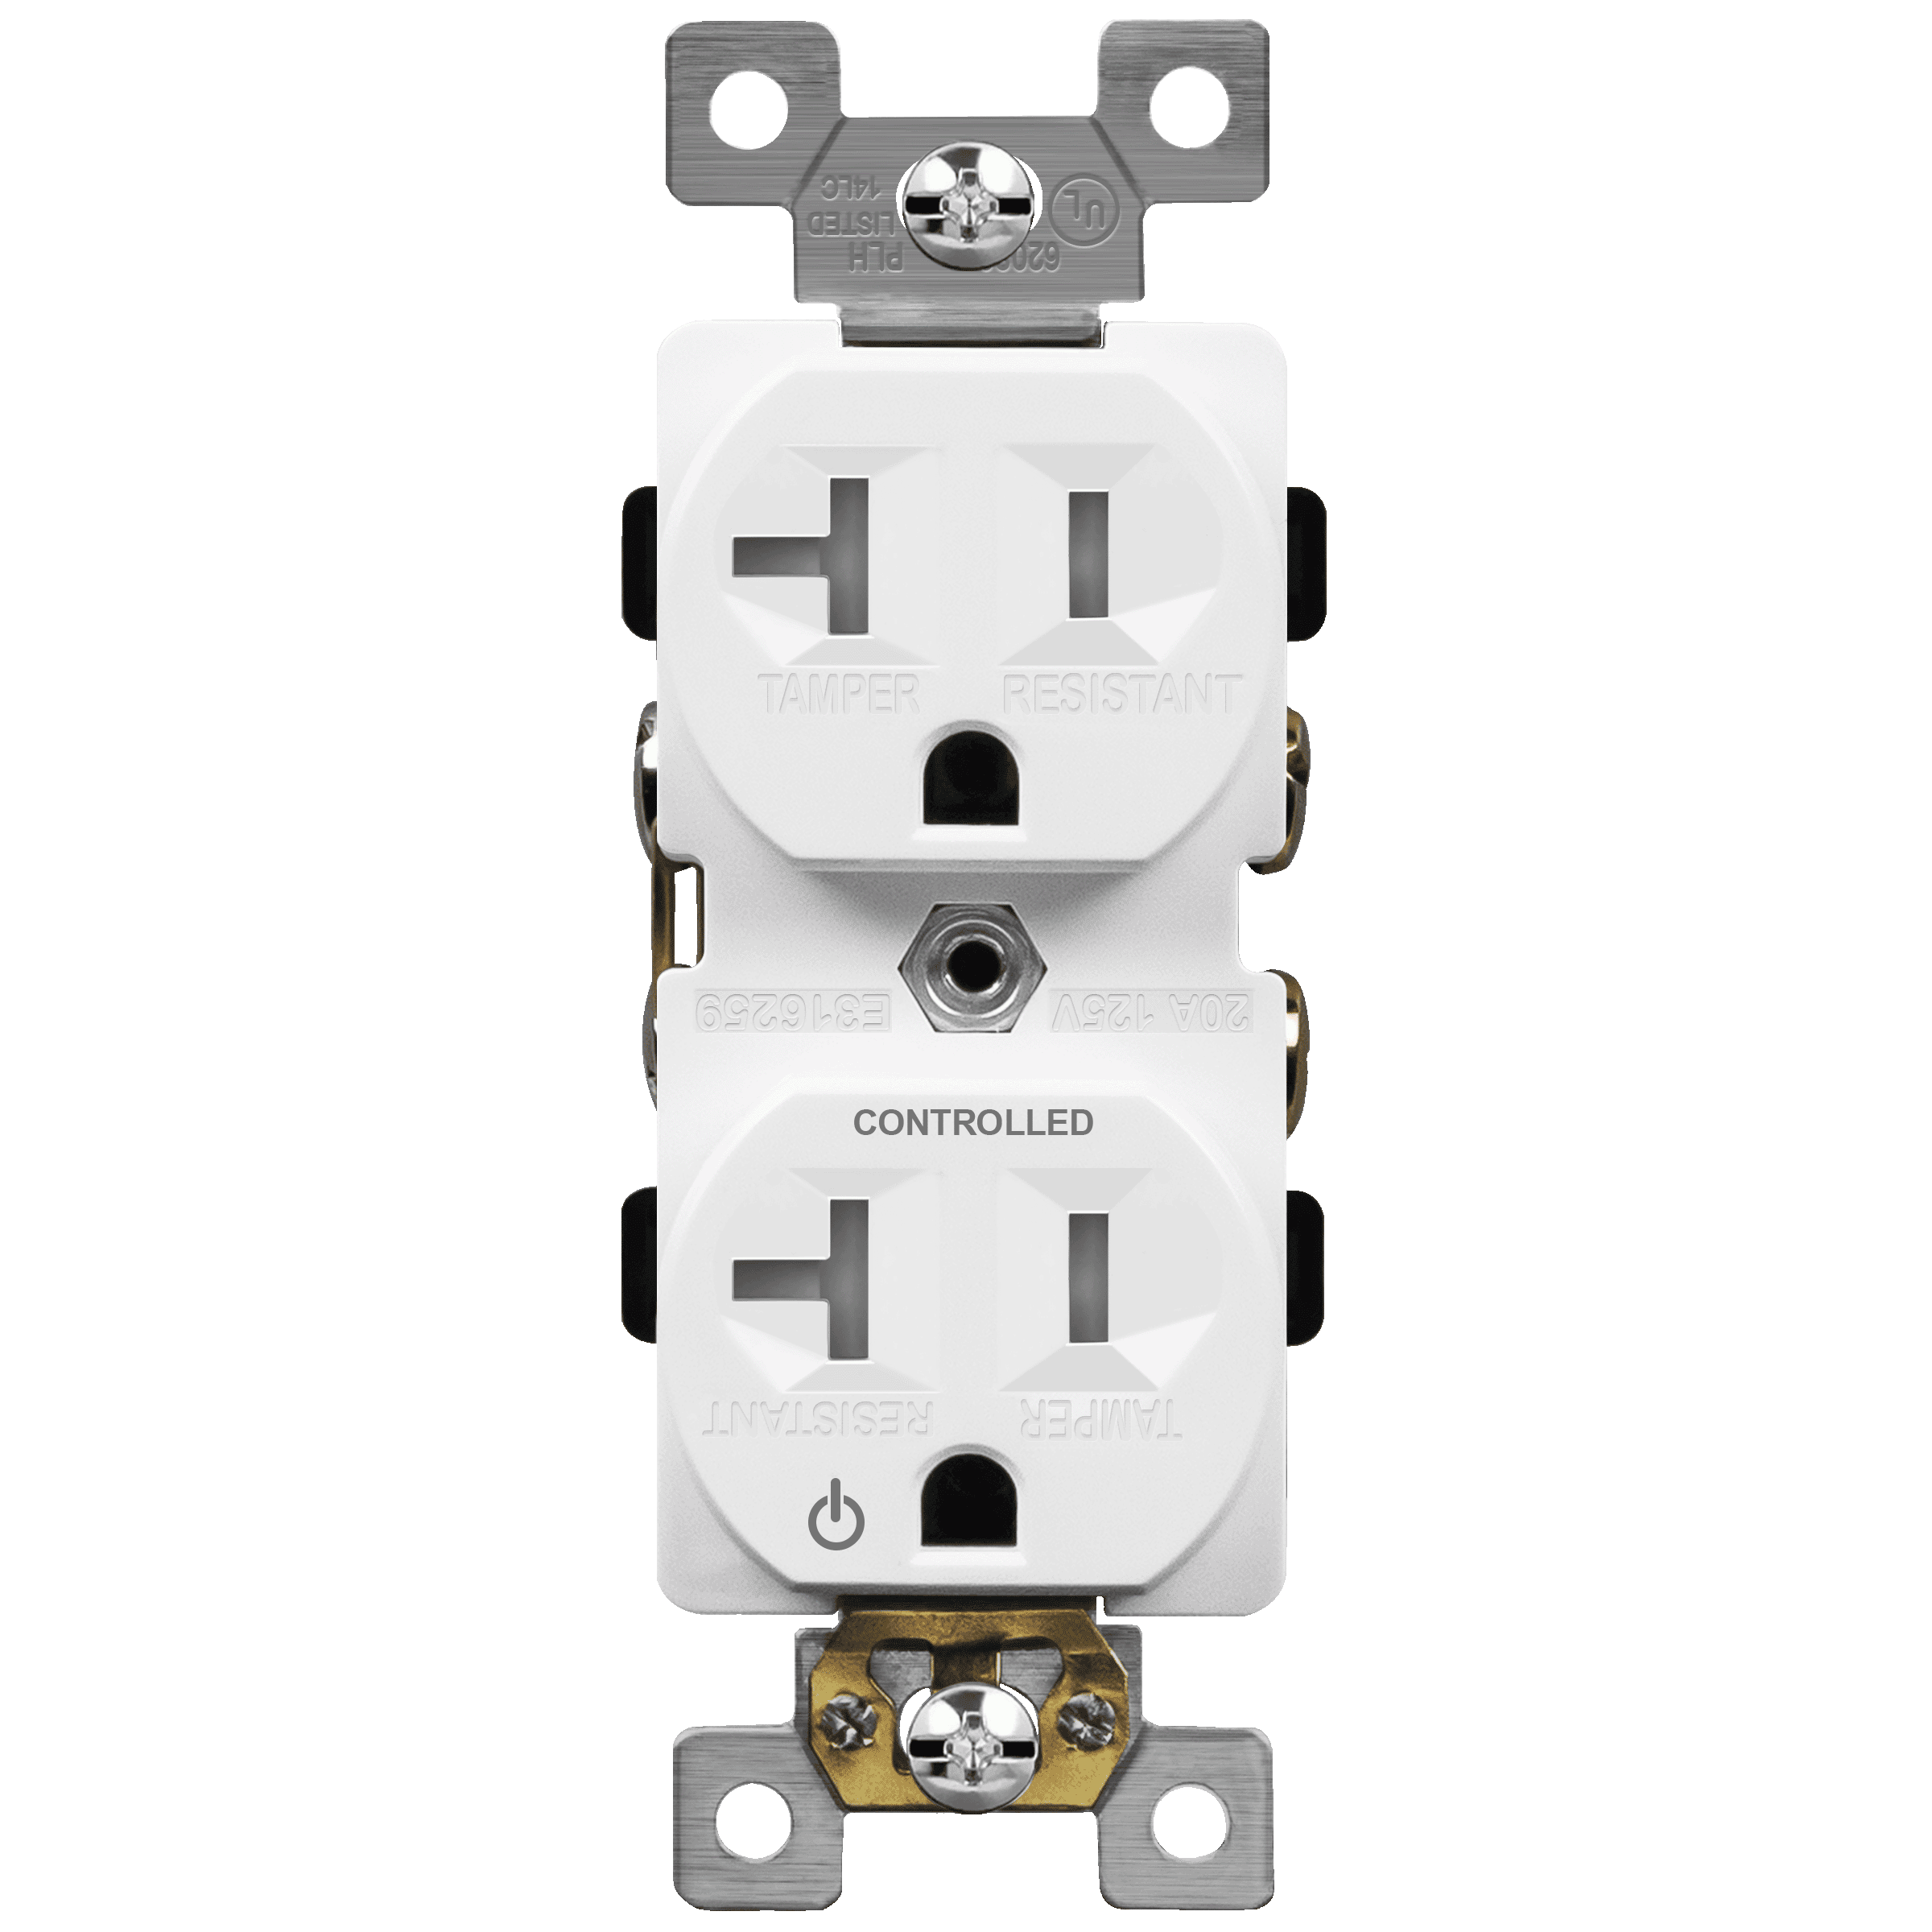 20A/125V Tamper-Resistant Plug-Load Controlled Duplex Outlet